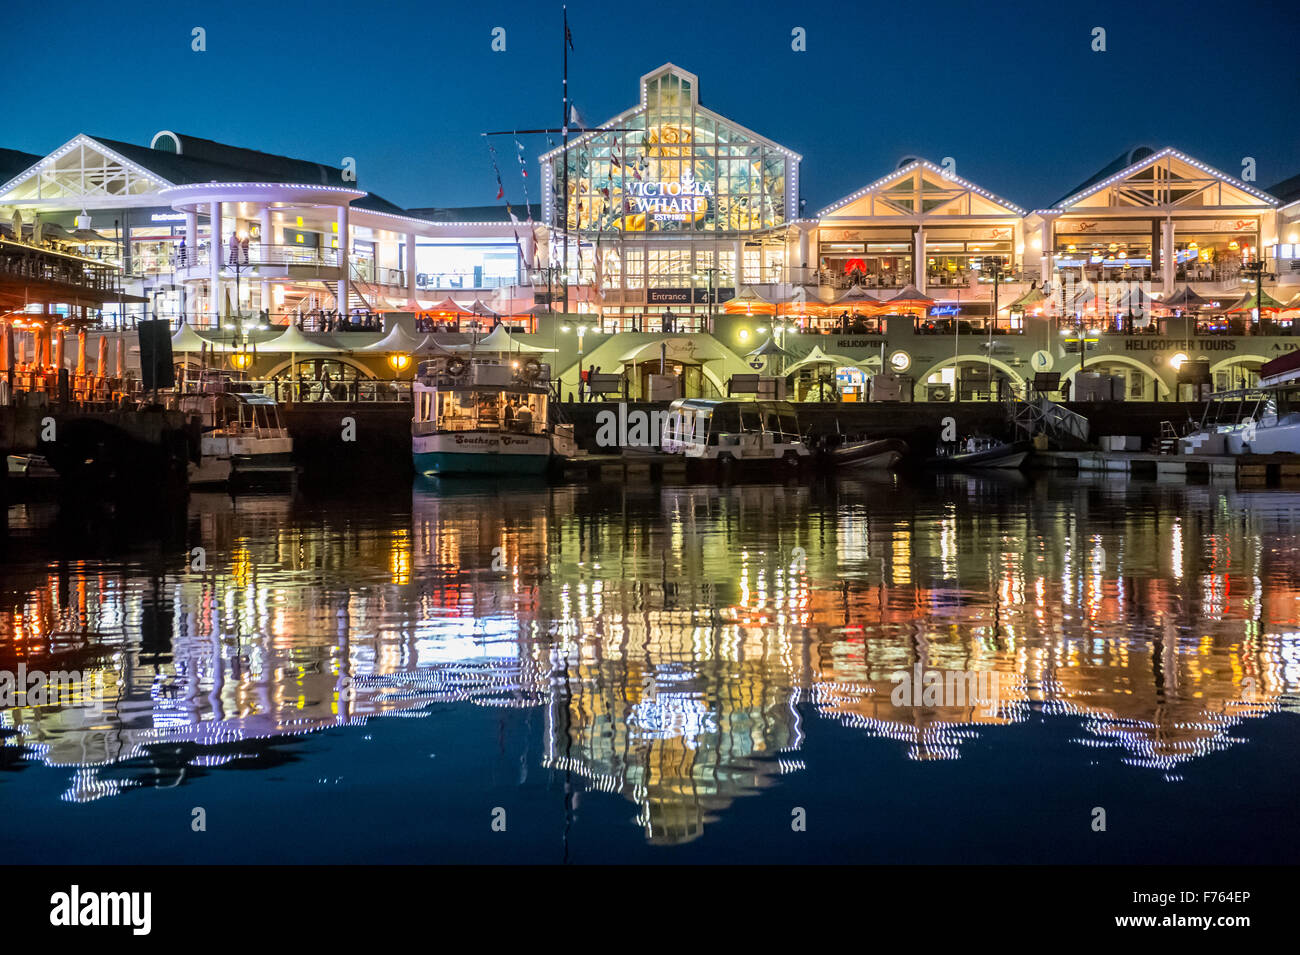 Ciudad del Cabo, Sudáfrica- V y A Waterfront , centro de Ciudad del Cabo Foto de stock